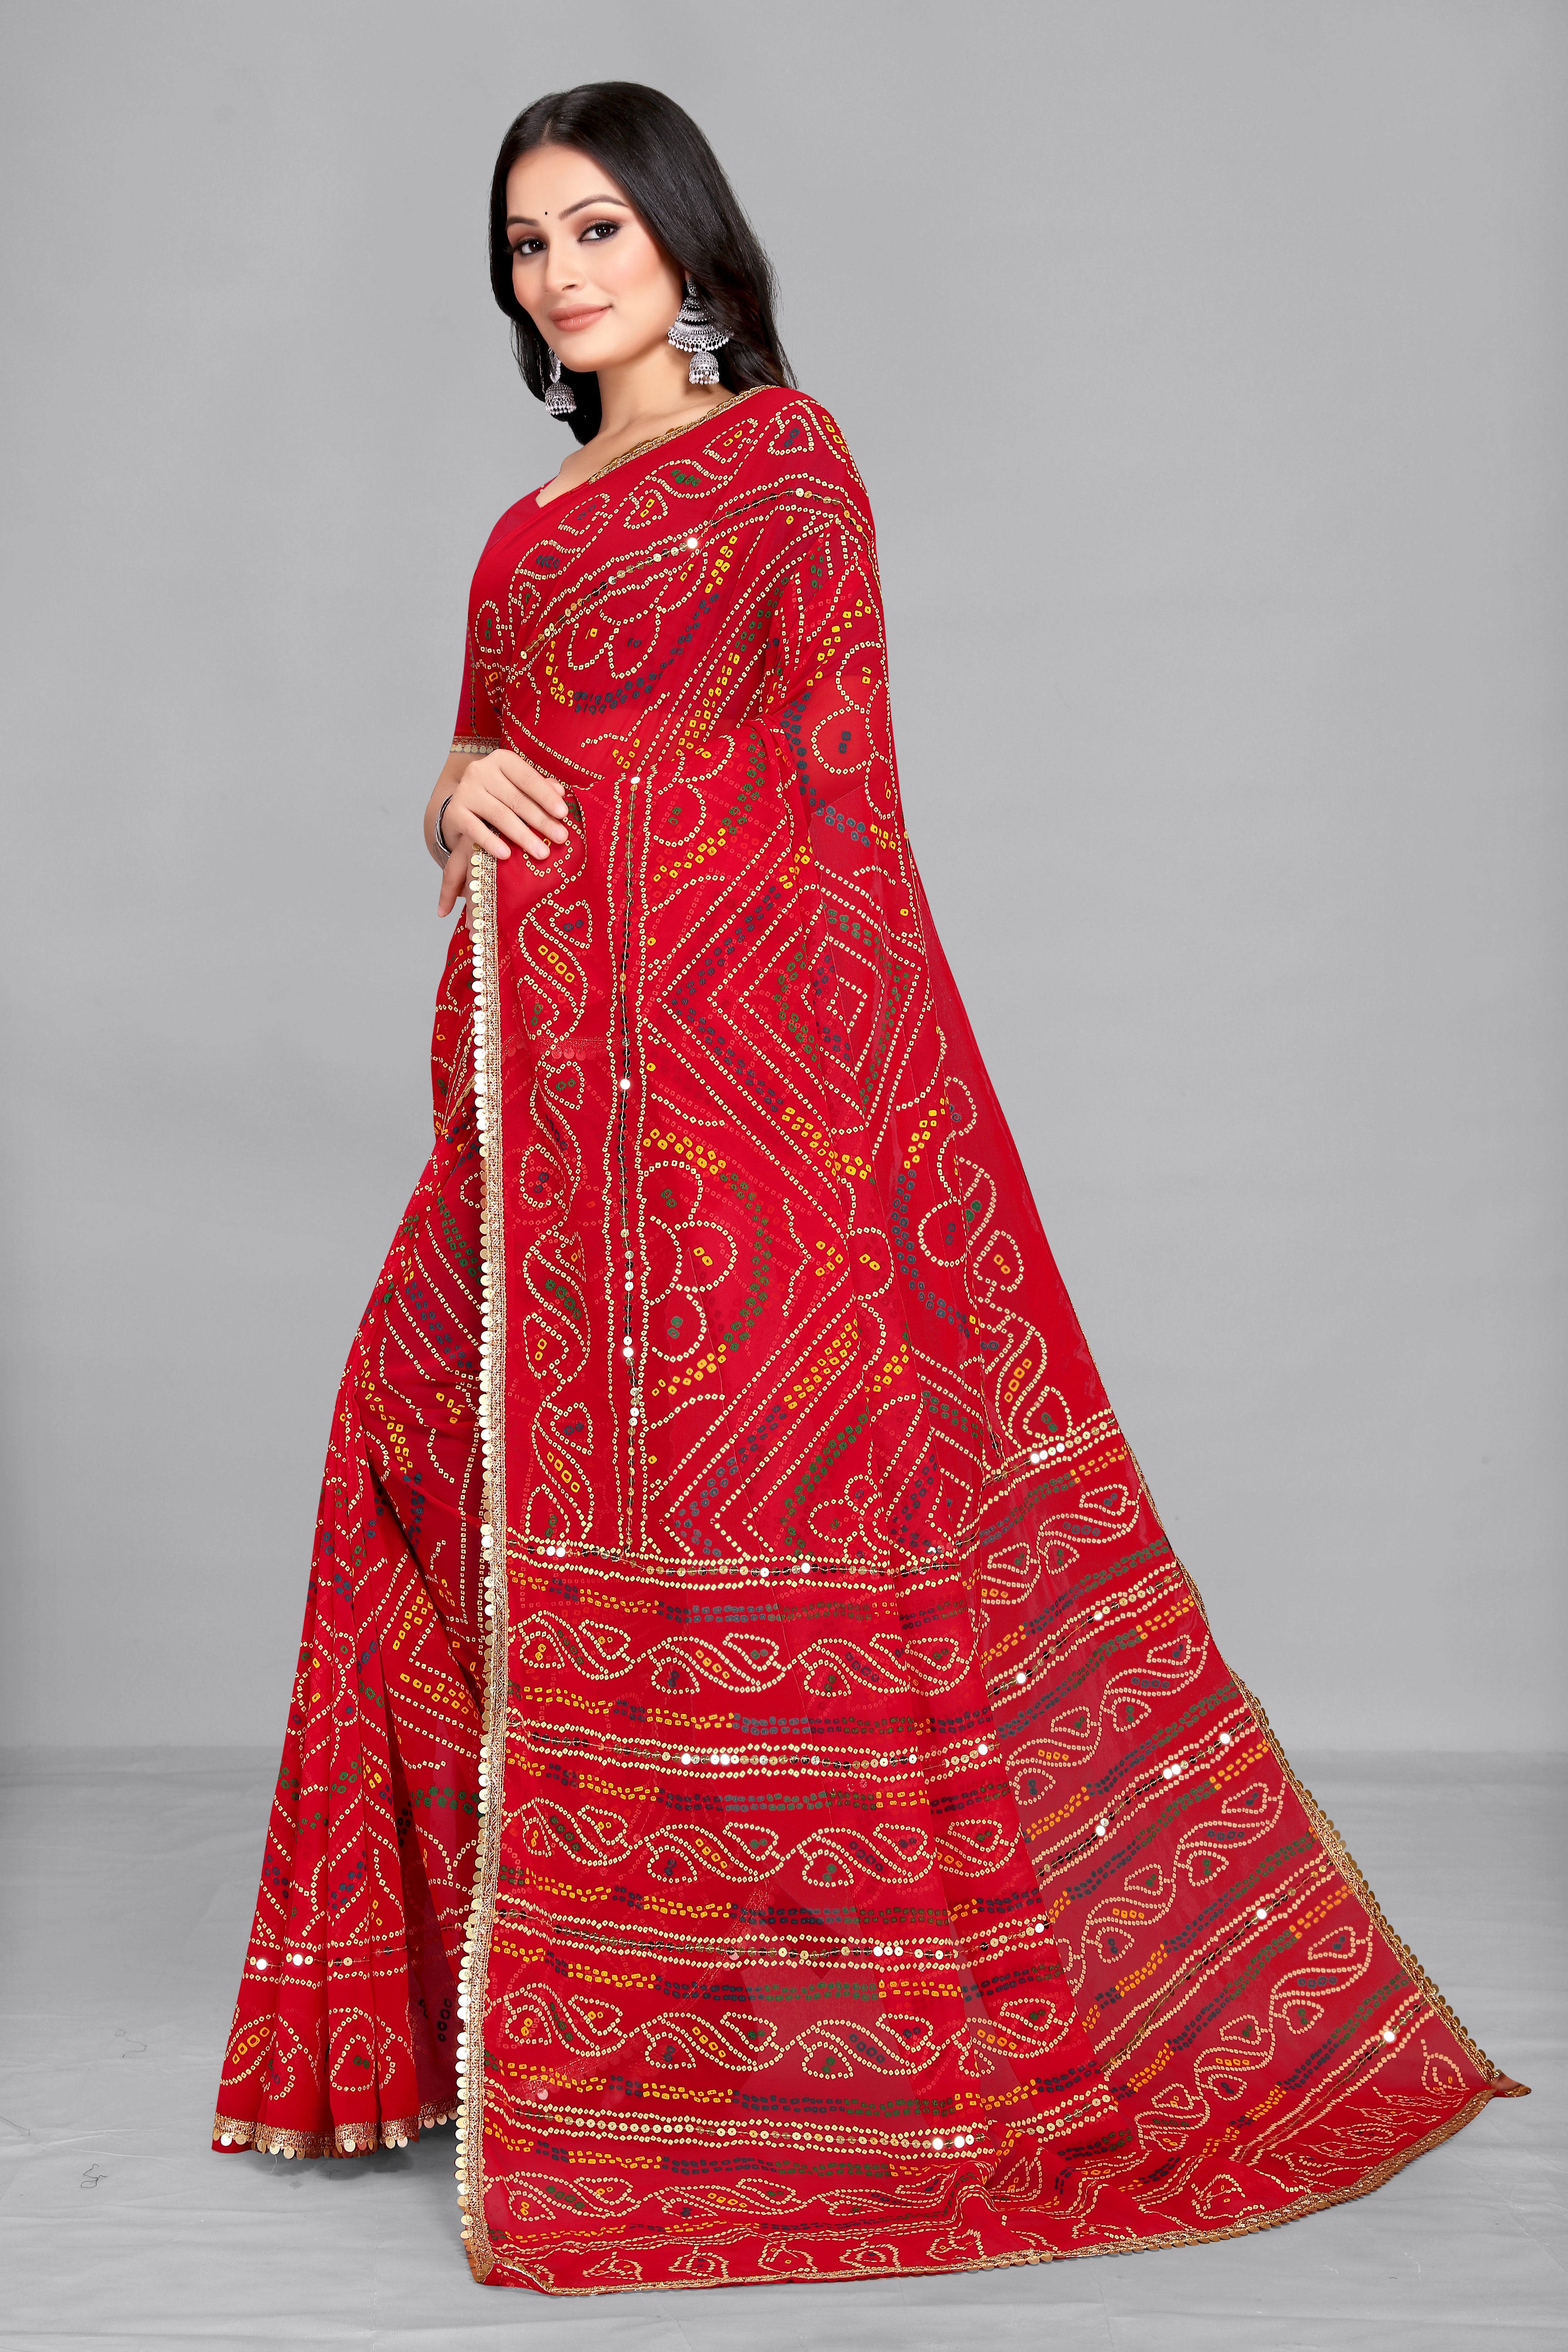 Women's Bandhani Printed Red Georgette Saree - Dwija Fashion